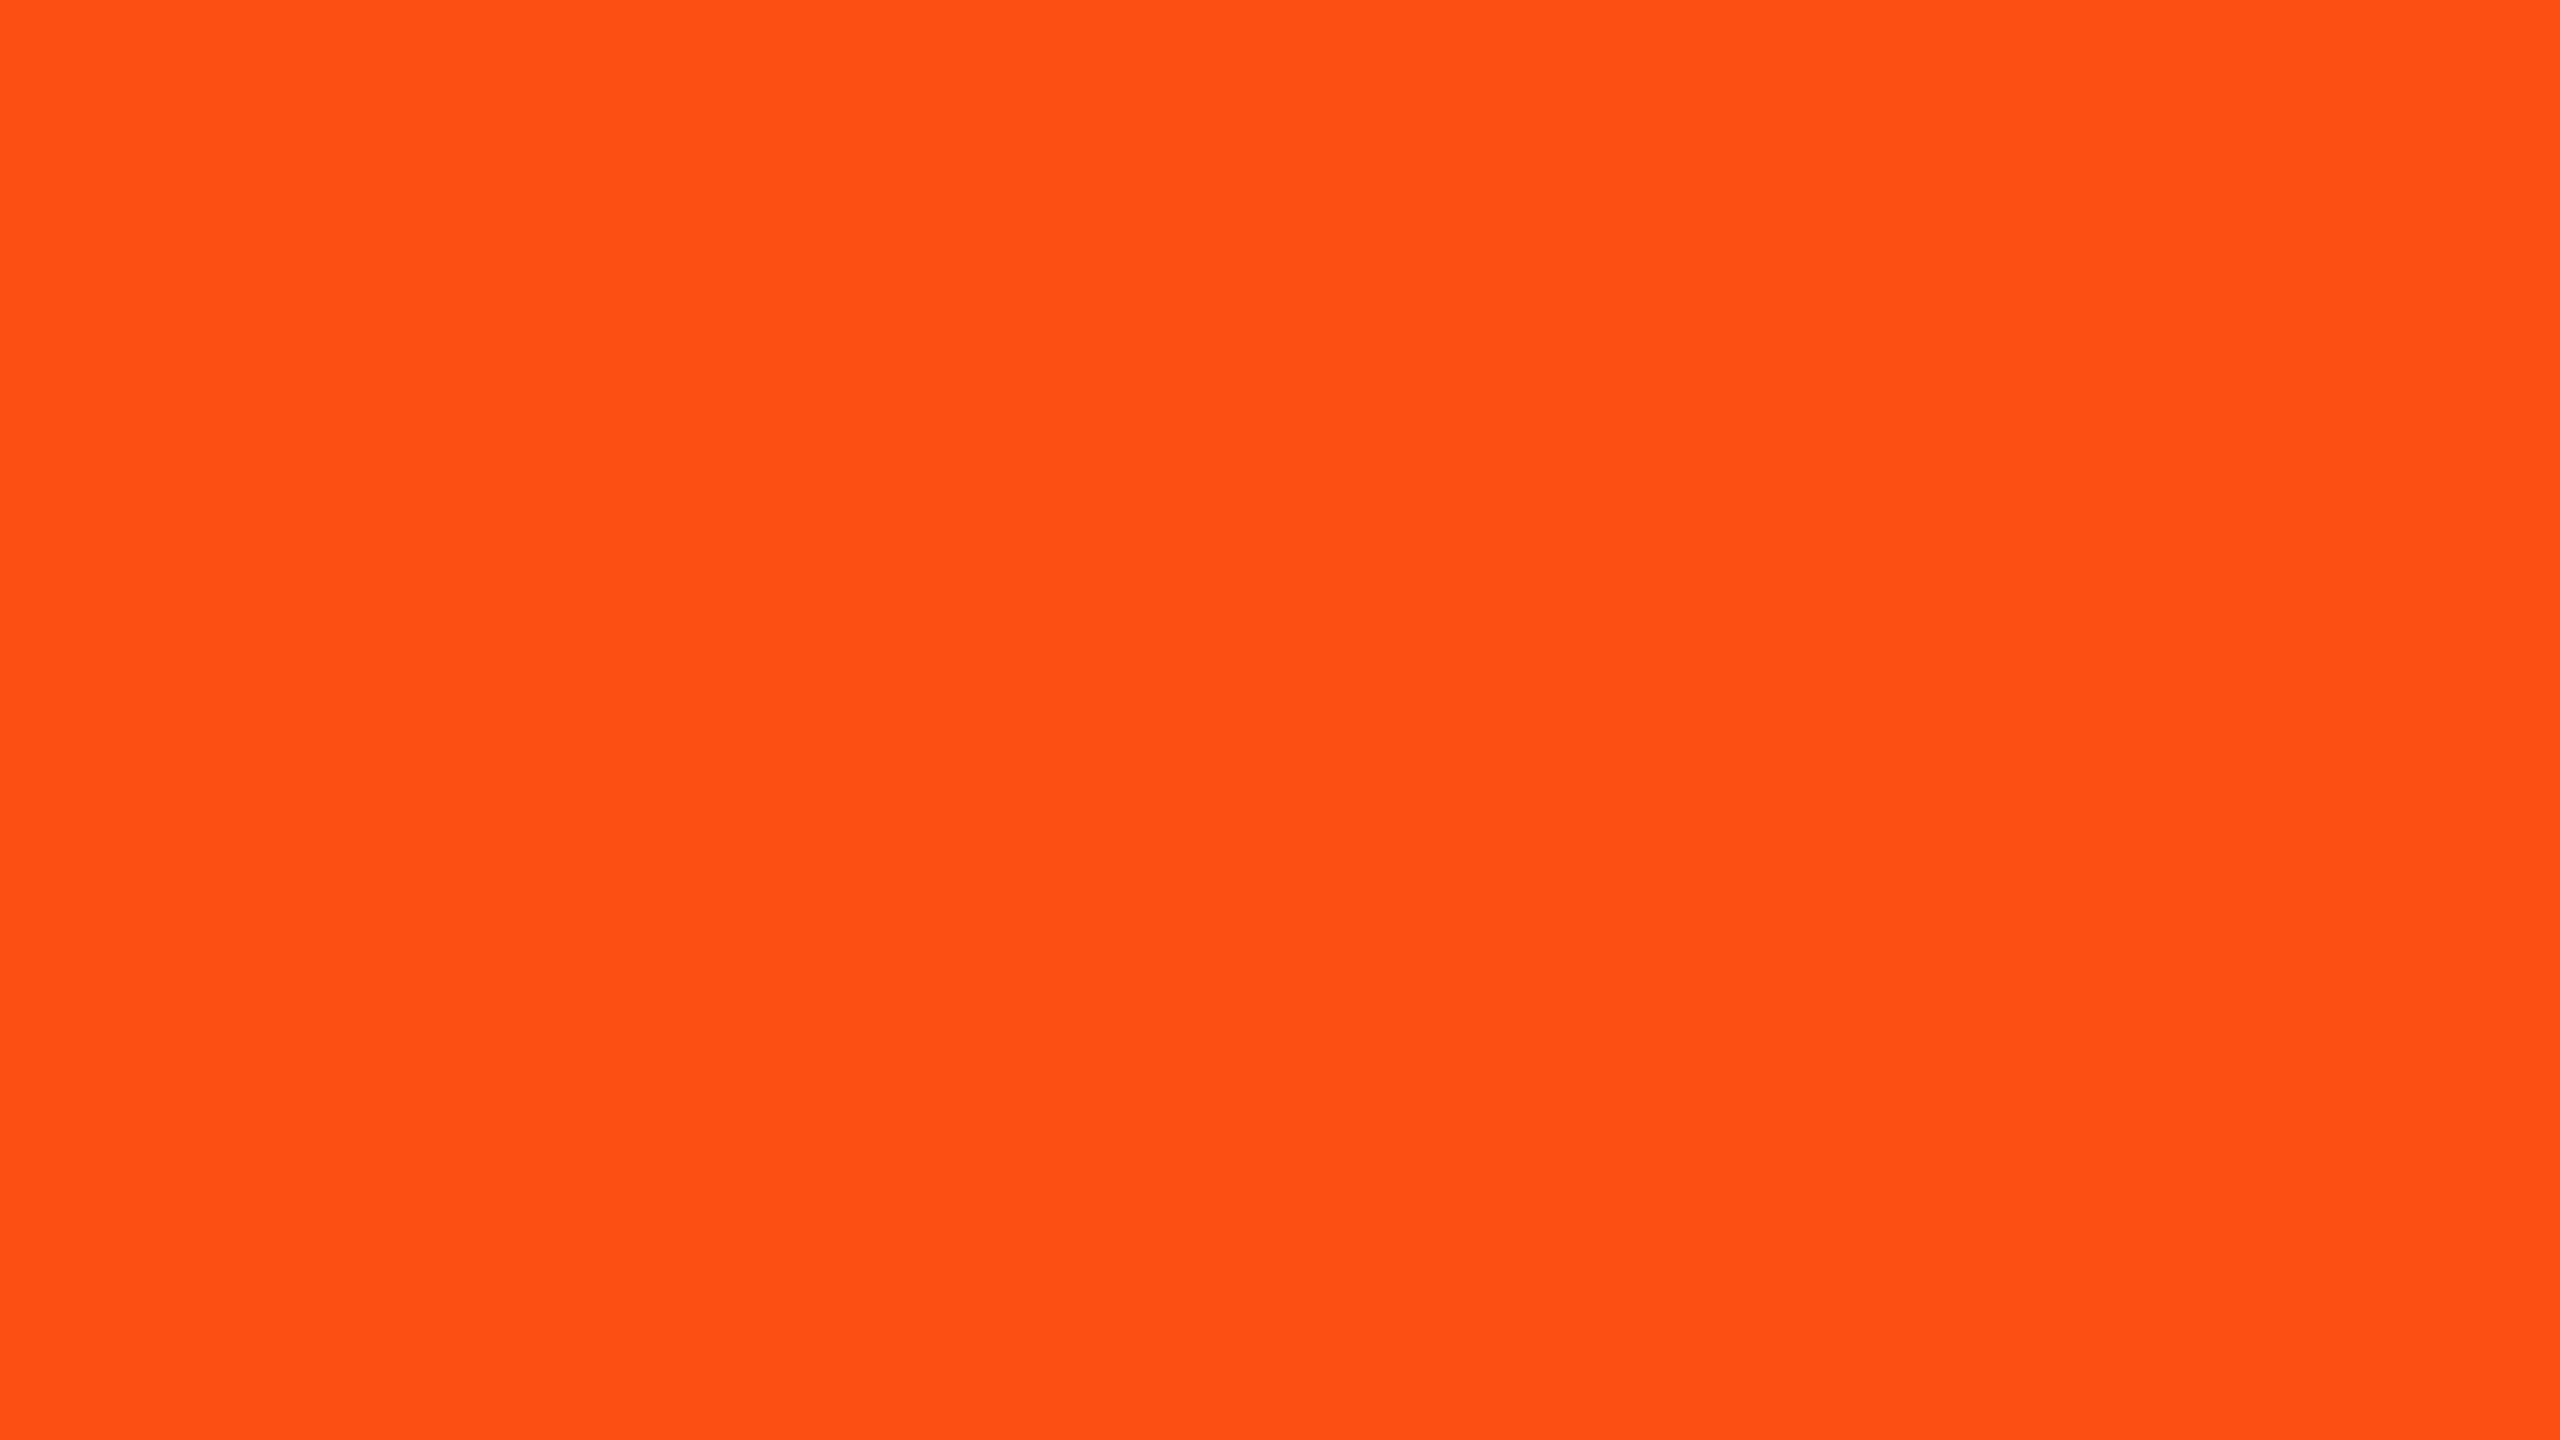 Loạt hình nền màu cam sẽ đem lại sự tươi trẻ và đầy năng lượng cho ngôi nhà của bạn. Hãy xem hình ảnh để lựa chọn những hình nền phù hợp cho căn phòng của bạn. Đảm bảo rằng bạn sẽ không còn phải mệt mỏi tìm kiếm hình ảnh tuyệt vời.